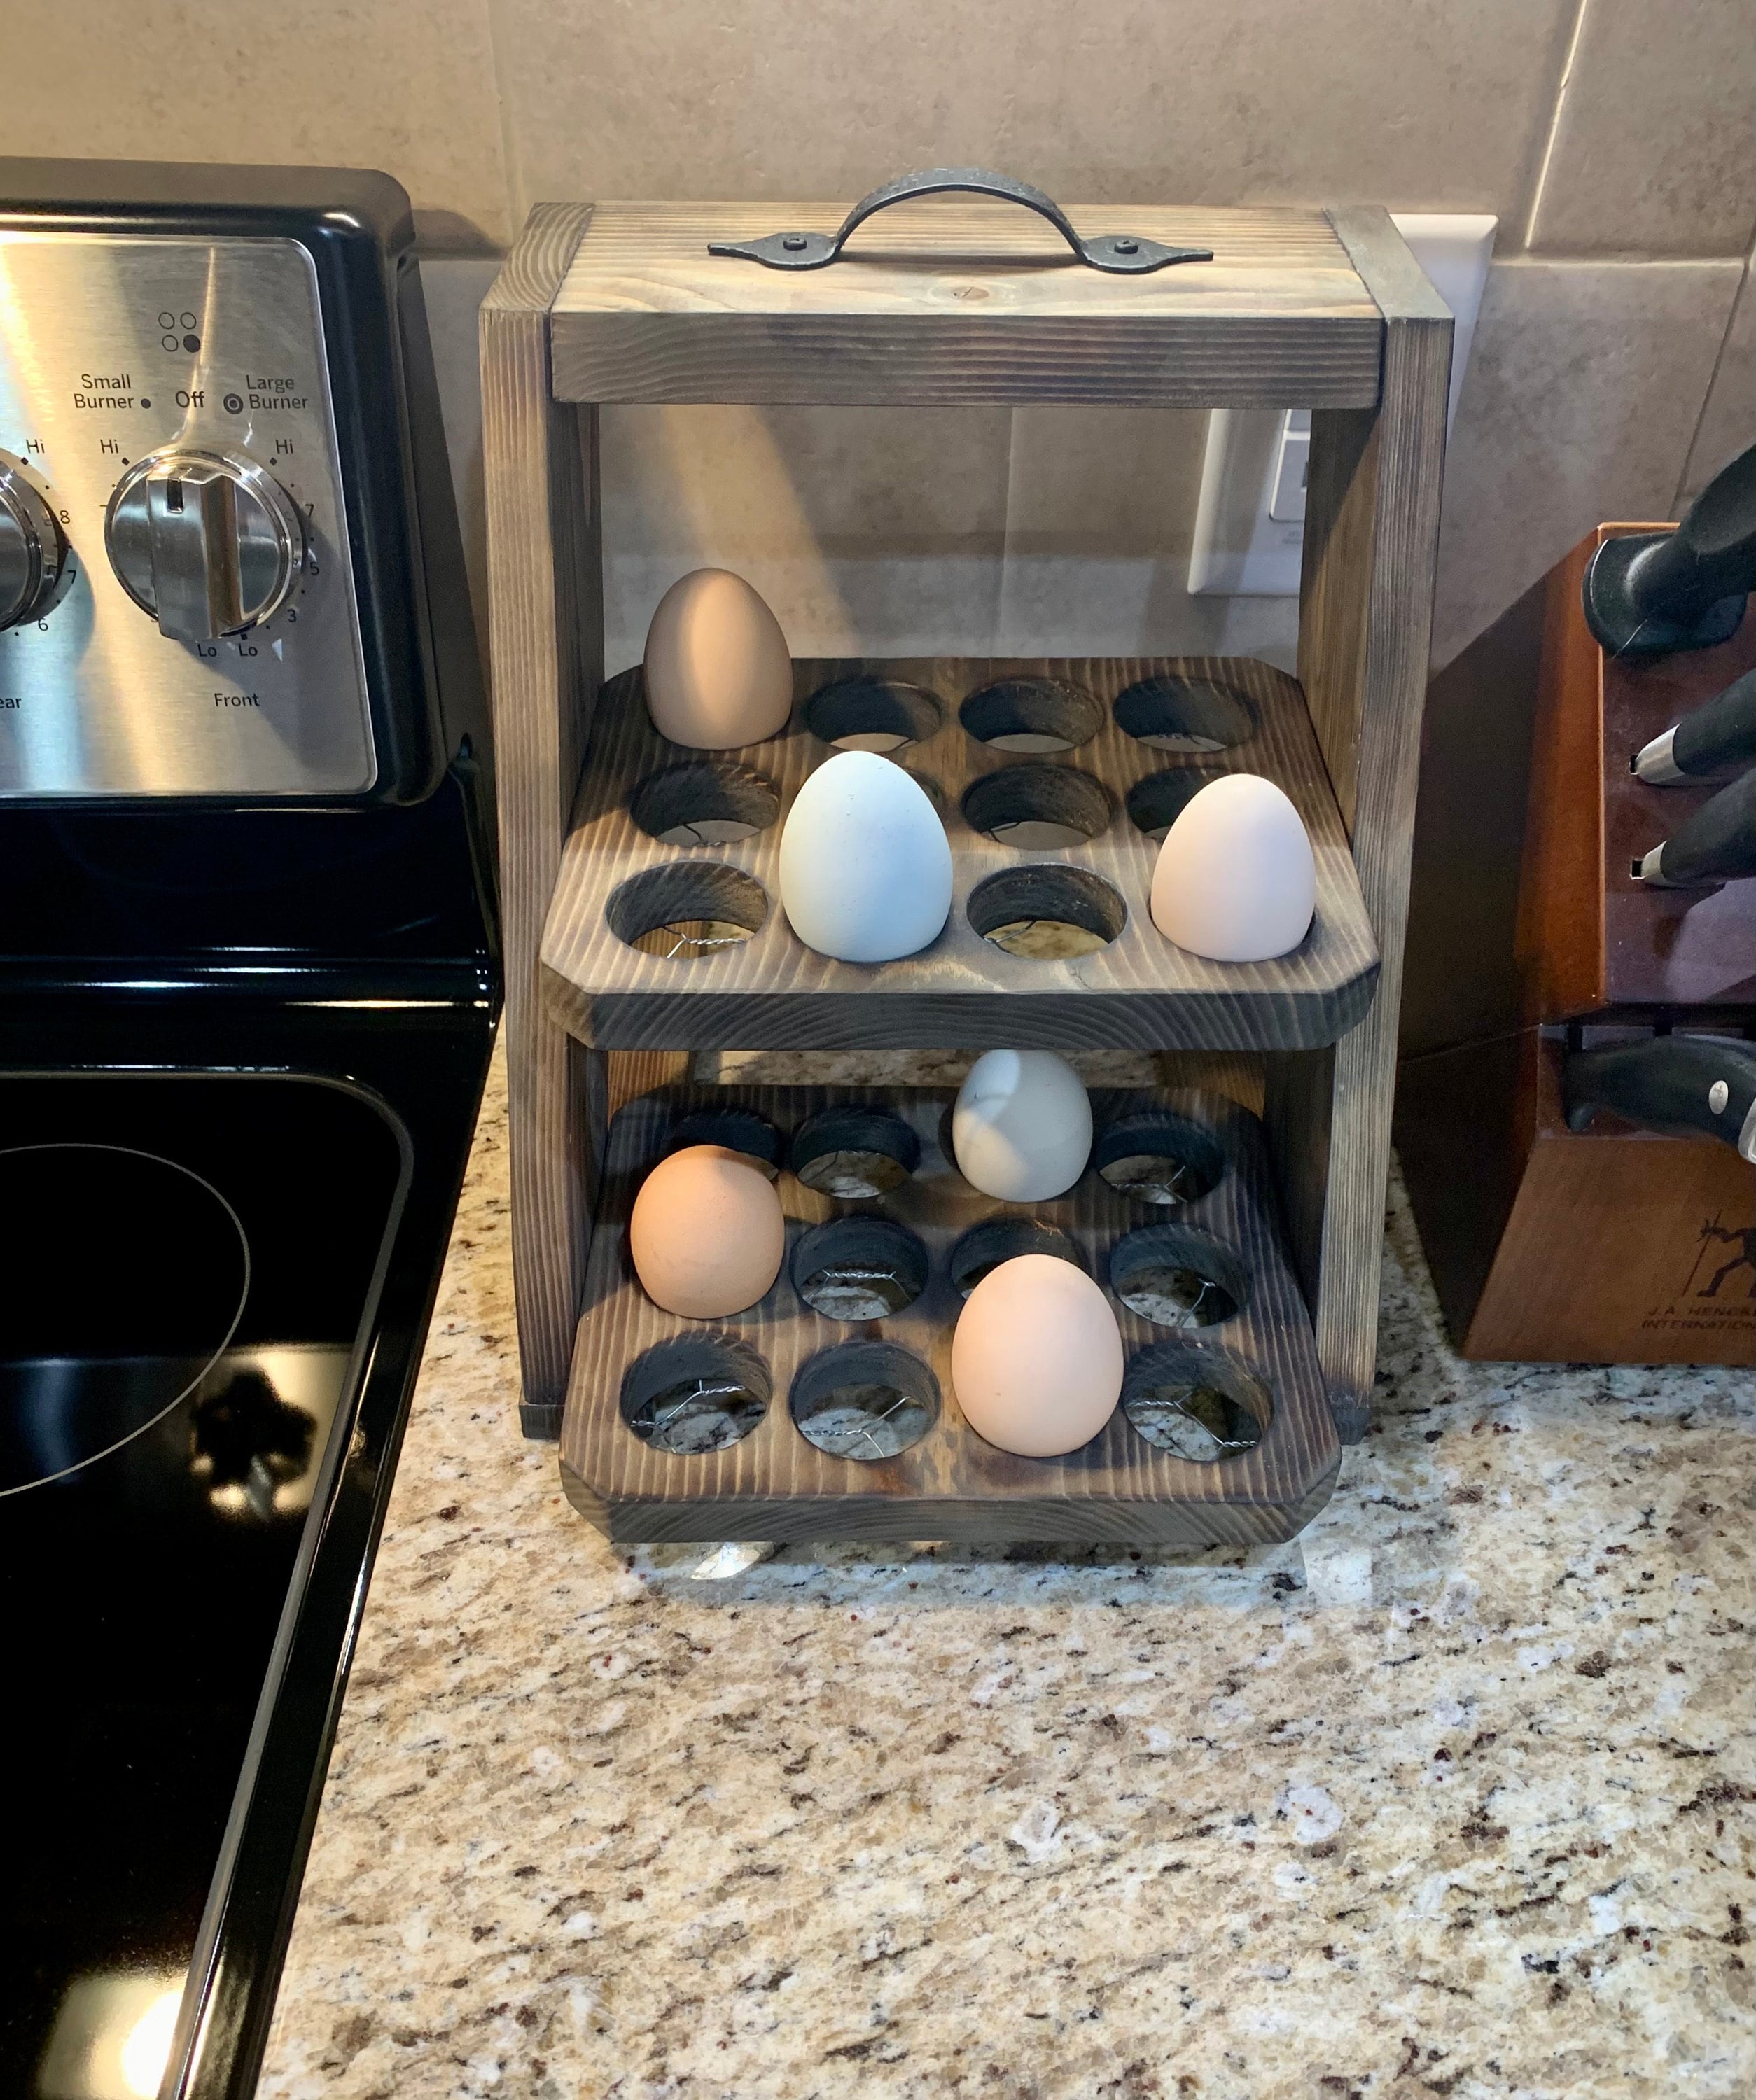 Wooden Egg Dispenser 